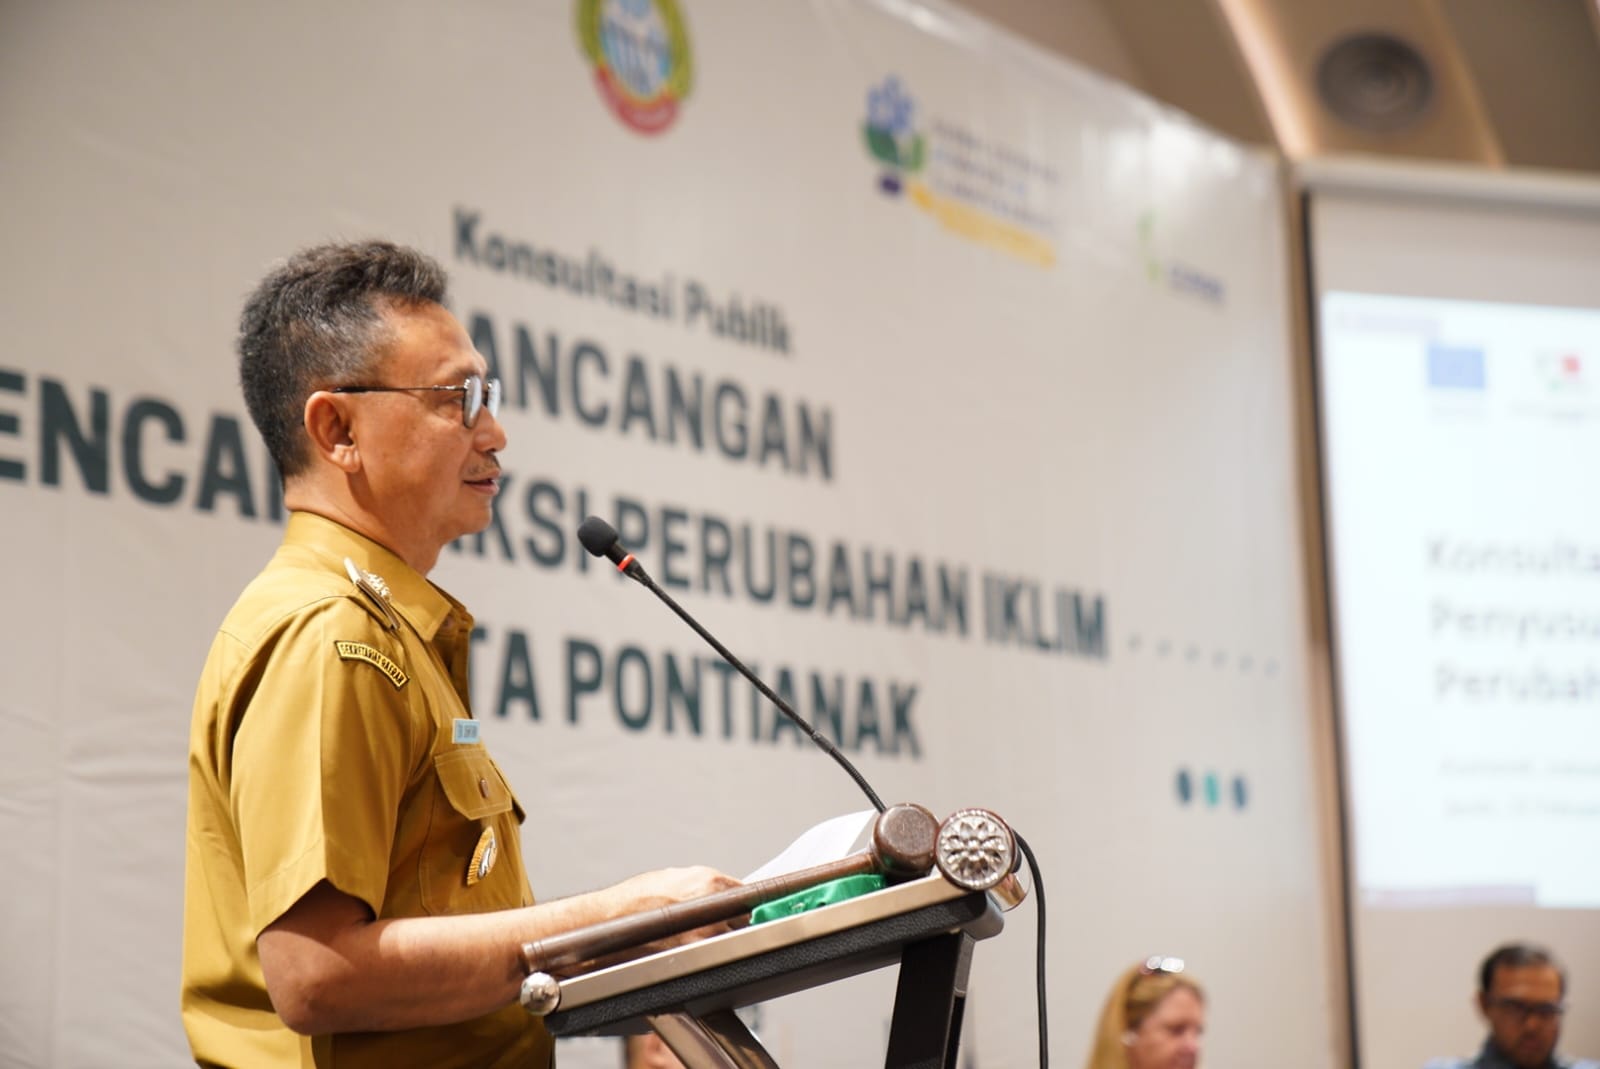 Wali Kota Pontianak, Edi Rusdi Kamtono memberikan sambutan pada Konsultasi Publik Rencana Aksi Perubahan Iklim di Kota Pontianak. (Foto: Prokopim For KalbarOnline.com)